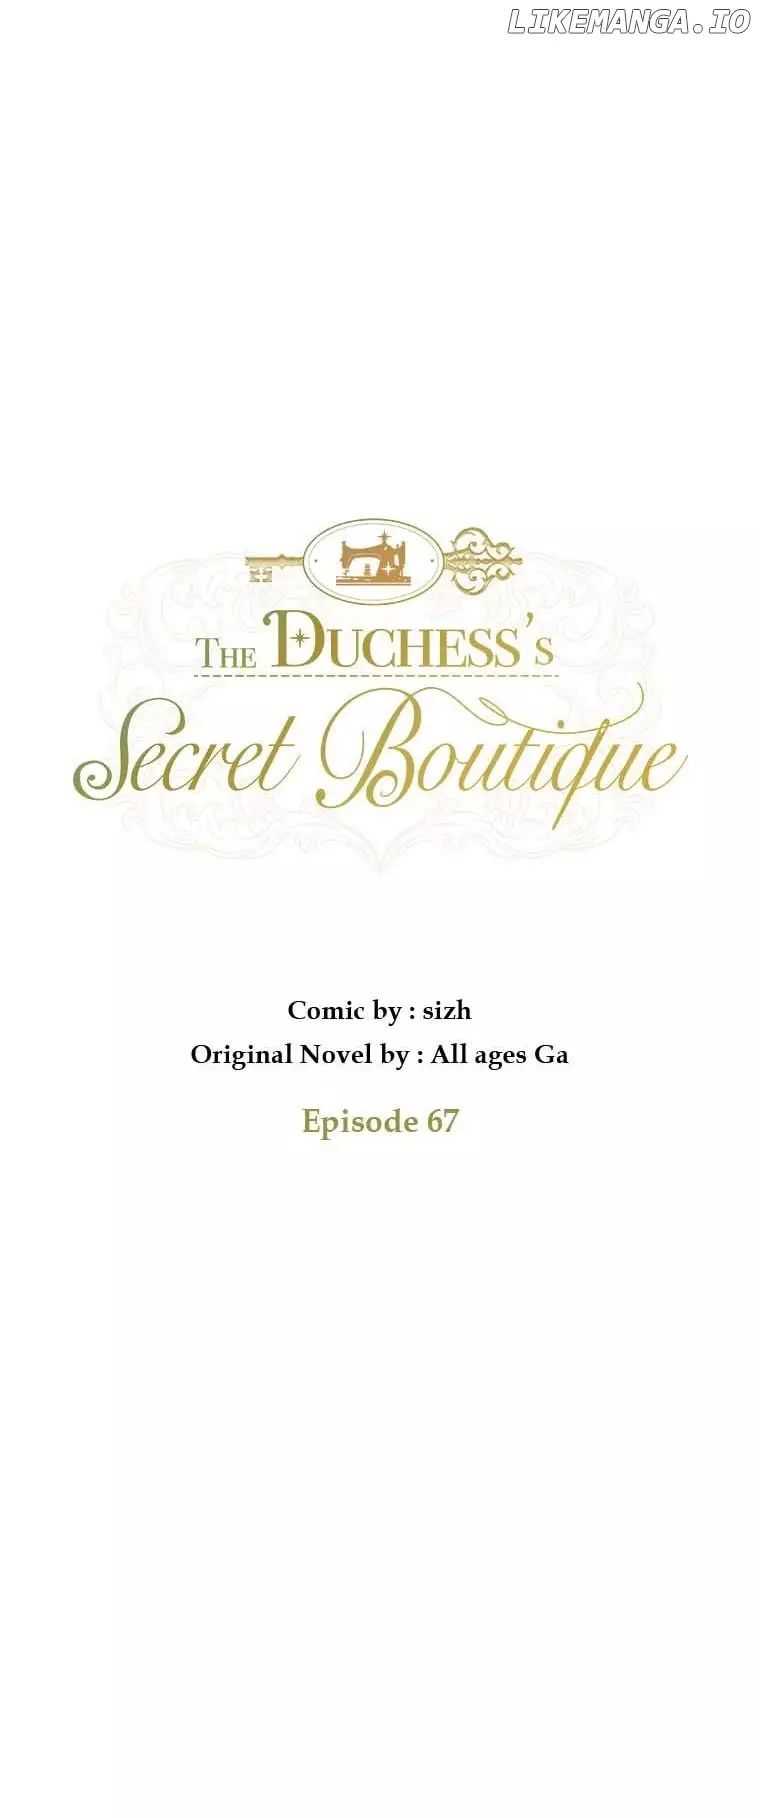 The Duchess’S Secret Dressing Room - 67 page 17-fe644de5